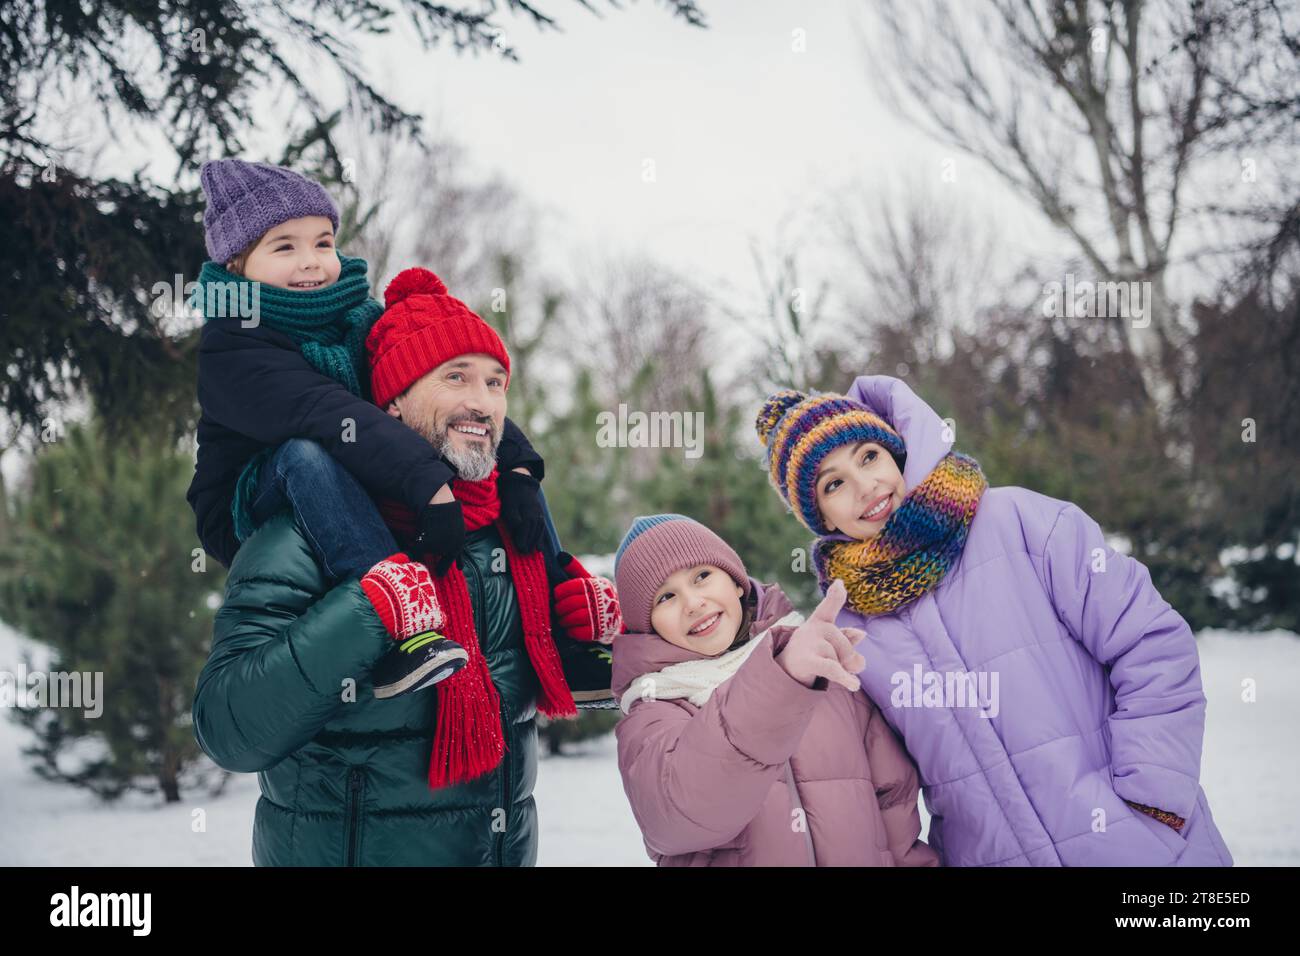 Foto von einem freundlichen süßen kleinen Kind Ehefrau gekleidete Mäntel, die zusammen den Nordpol des weihnachtsmanns im Freien im städtischen Waldpark besuchen Stockfoto